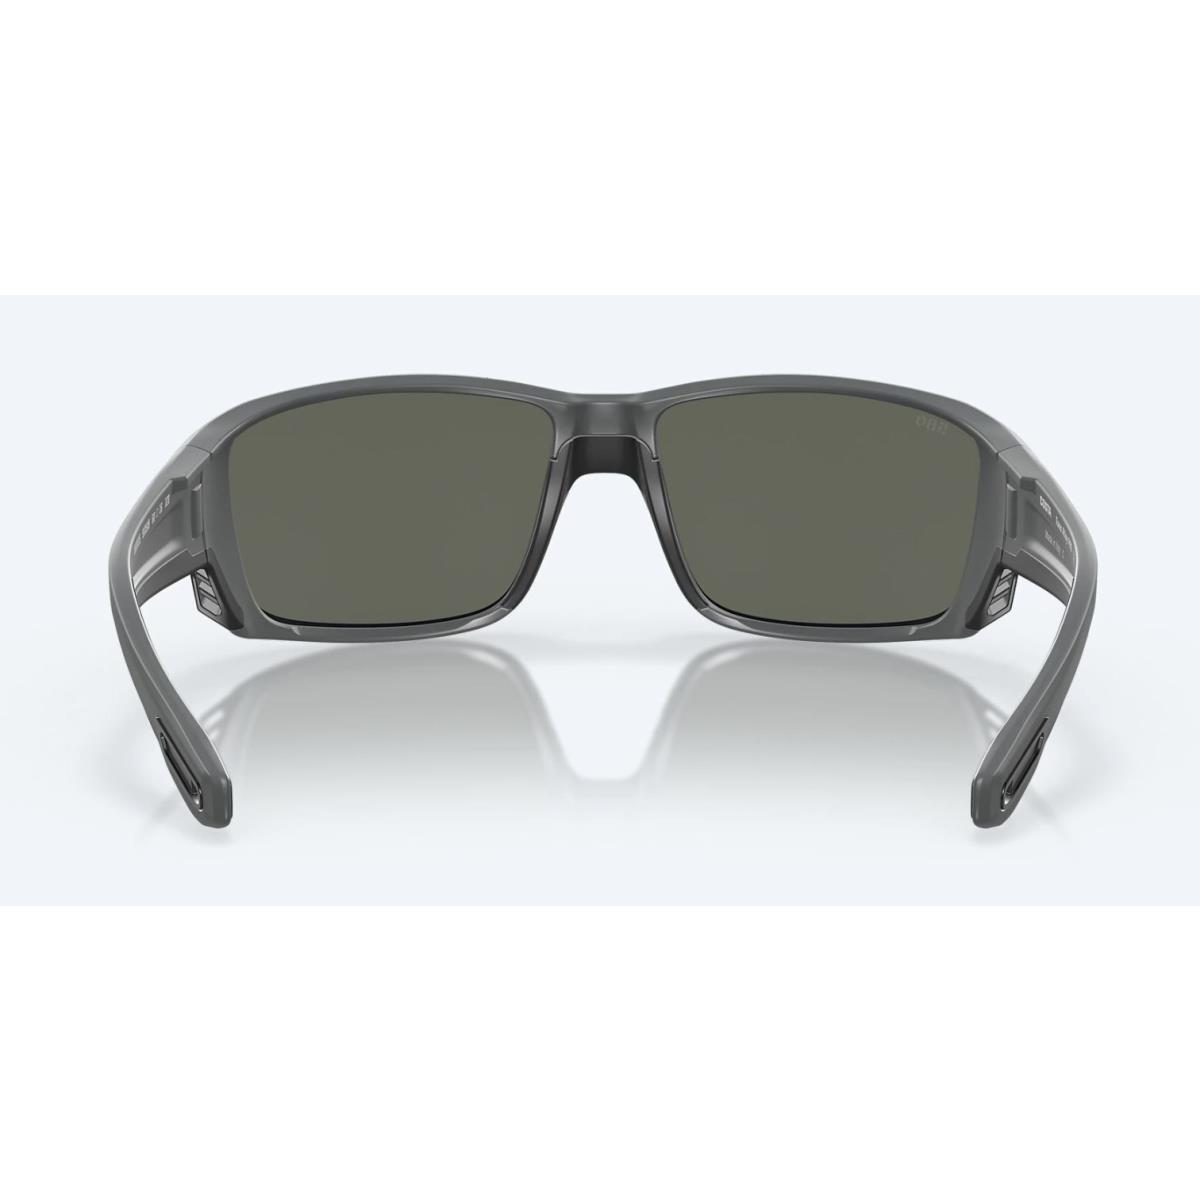 Costa Del Mar sunglasses  - Frame: Matte Gray, Lens: Gray Silver